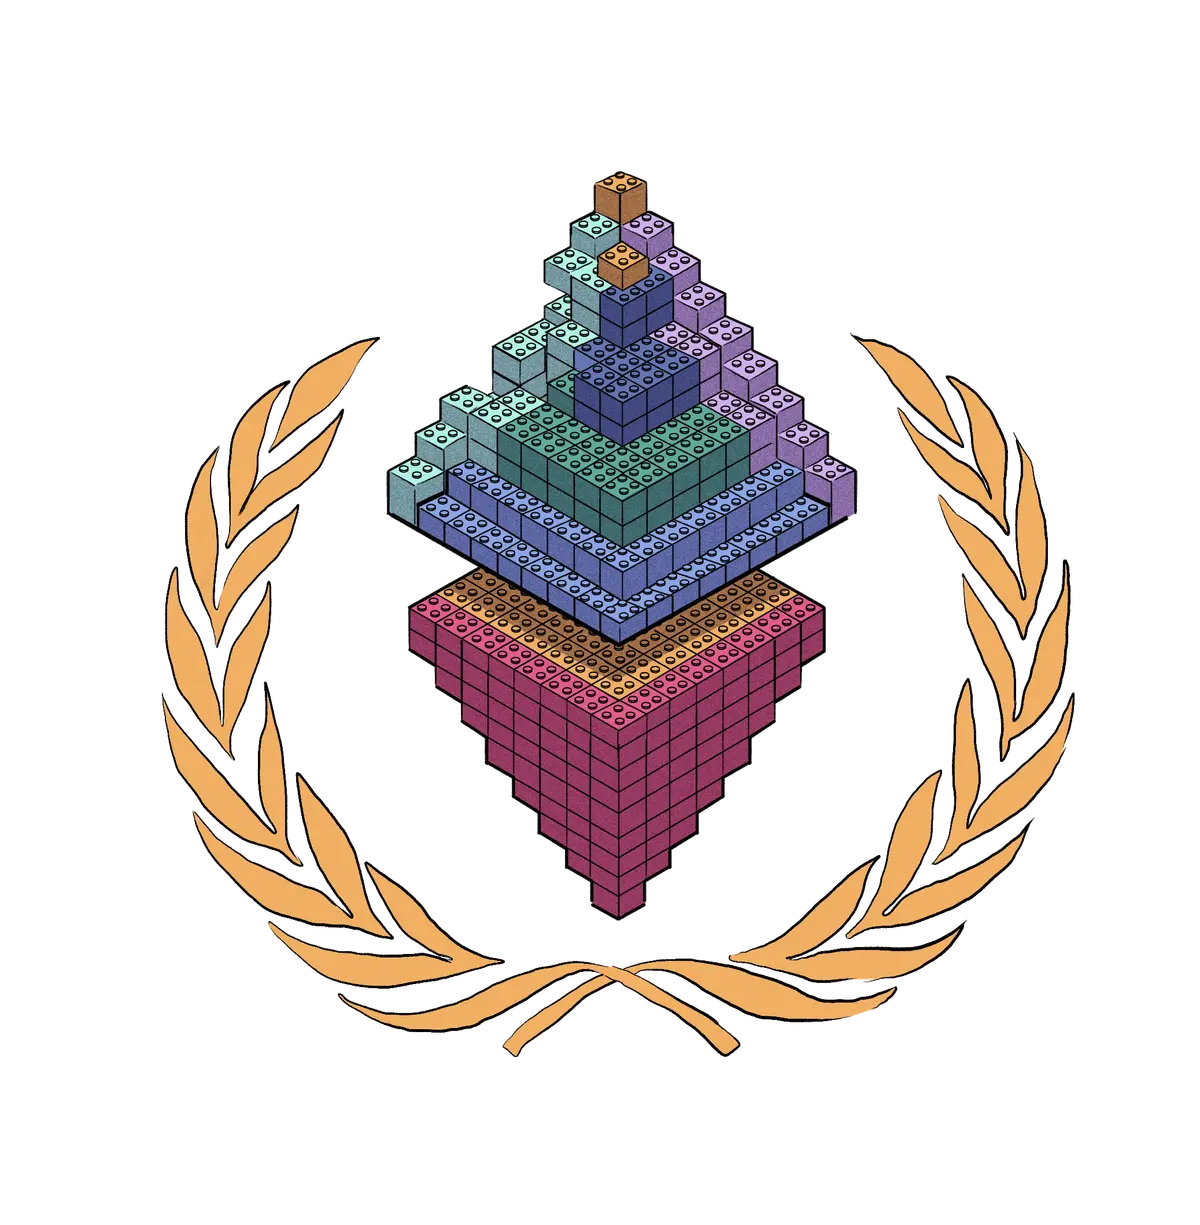 Um logotipo de Ethereum feito de blocos de lego.